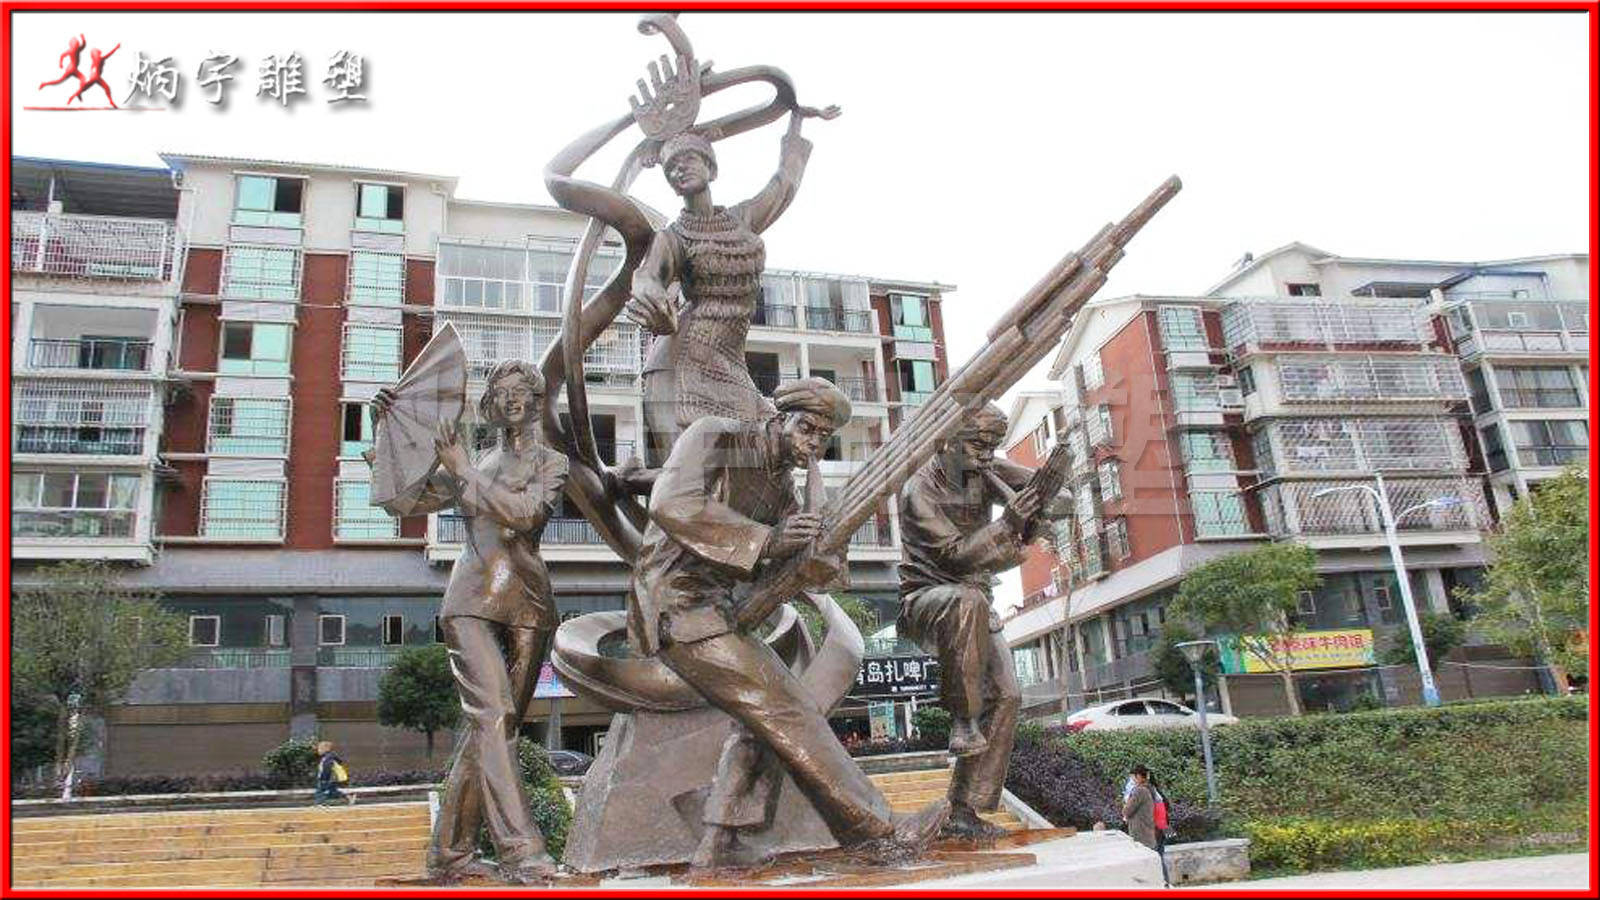 舞蹈雕塑--演绎中华民族舞蹈特色风采